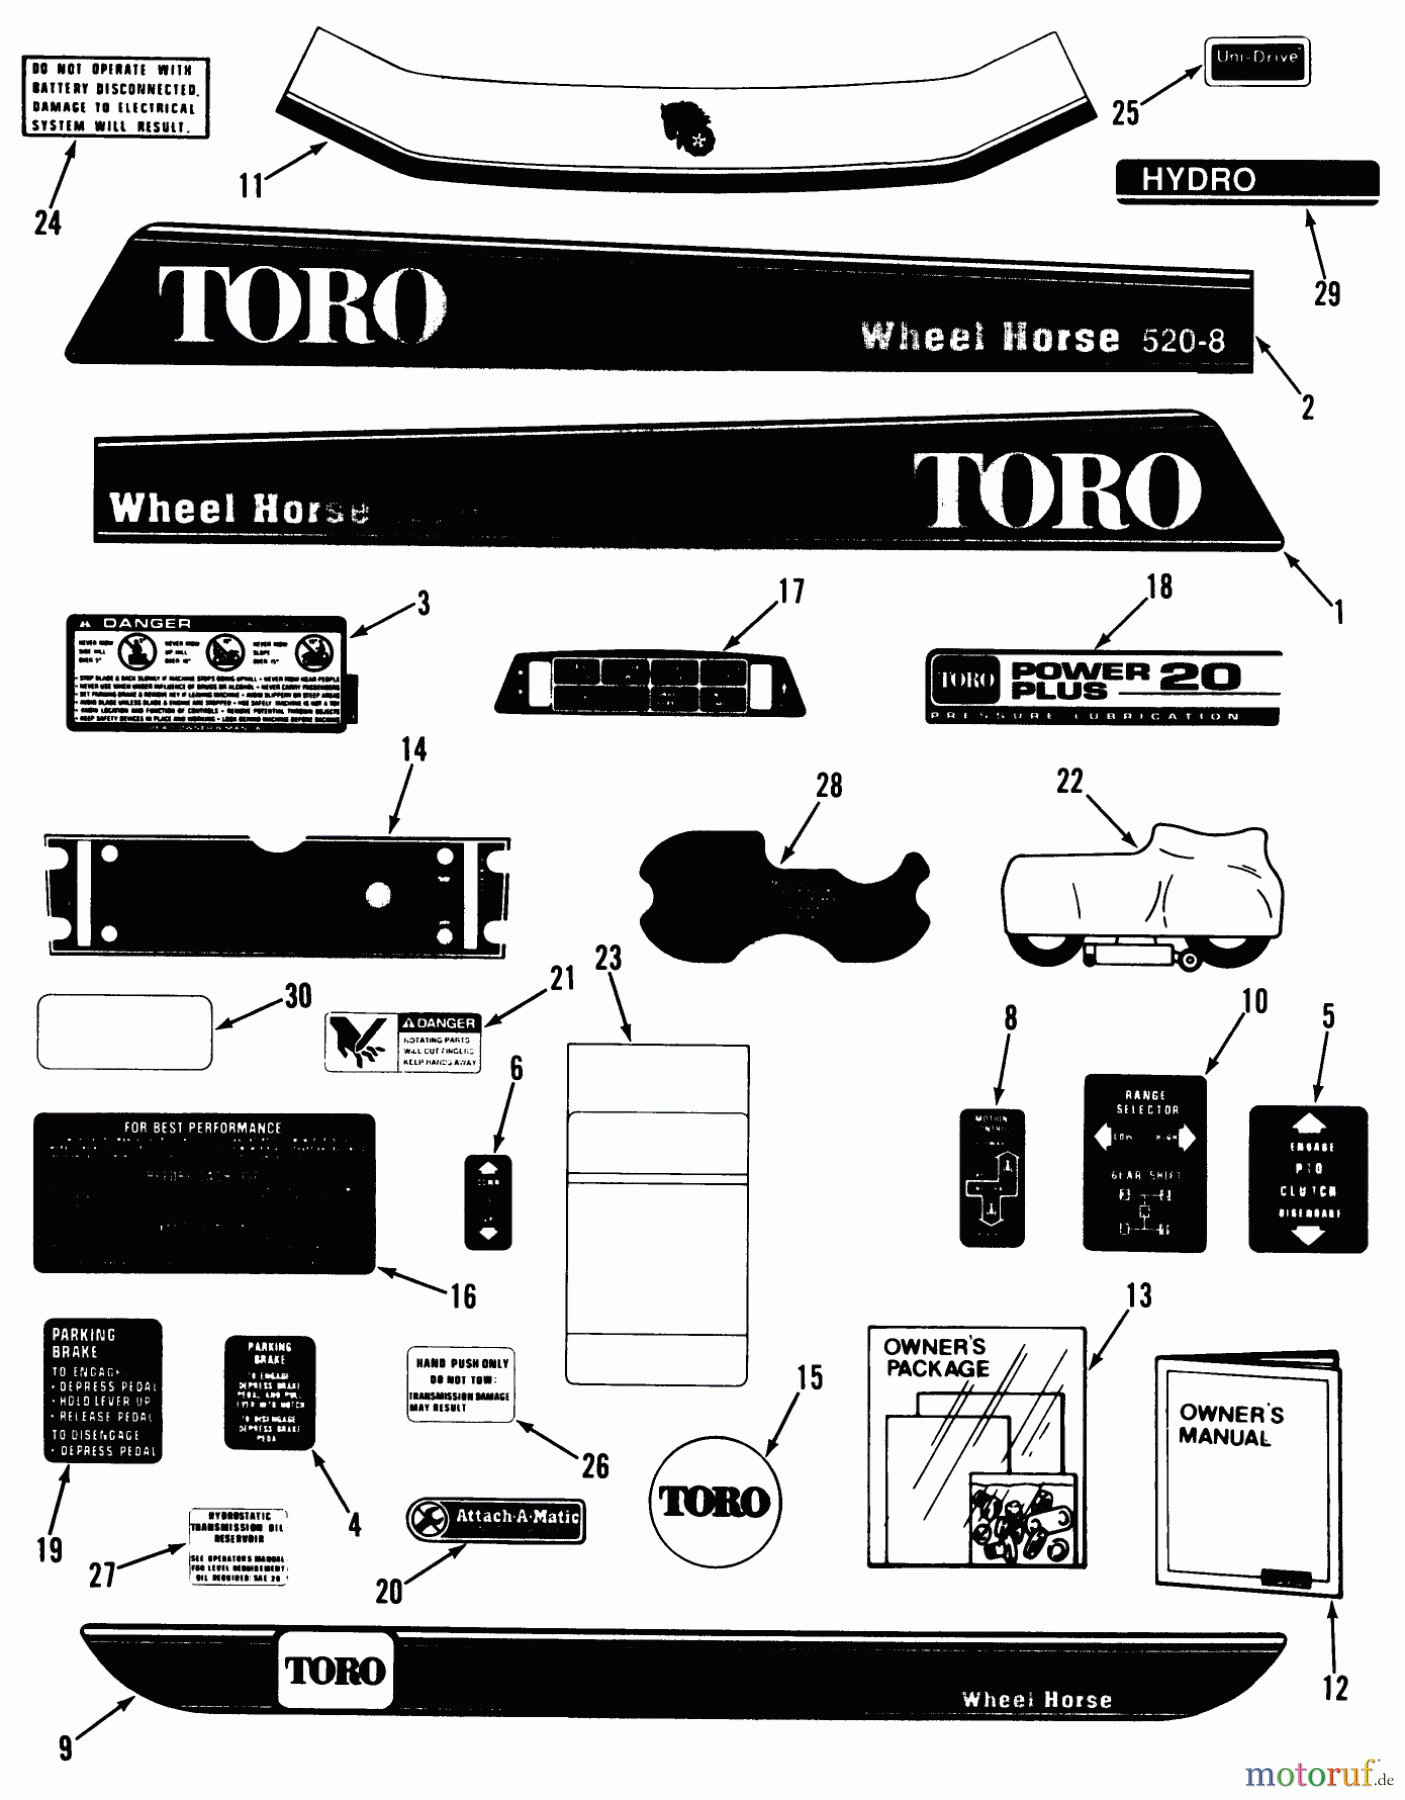  Toro Neu Mowers, Lawn & Garden Tractor Seite 1 41-20OE01 (520-H) - Toro 520-H Garden Tractor, 1990 DECALS